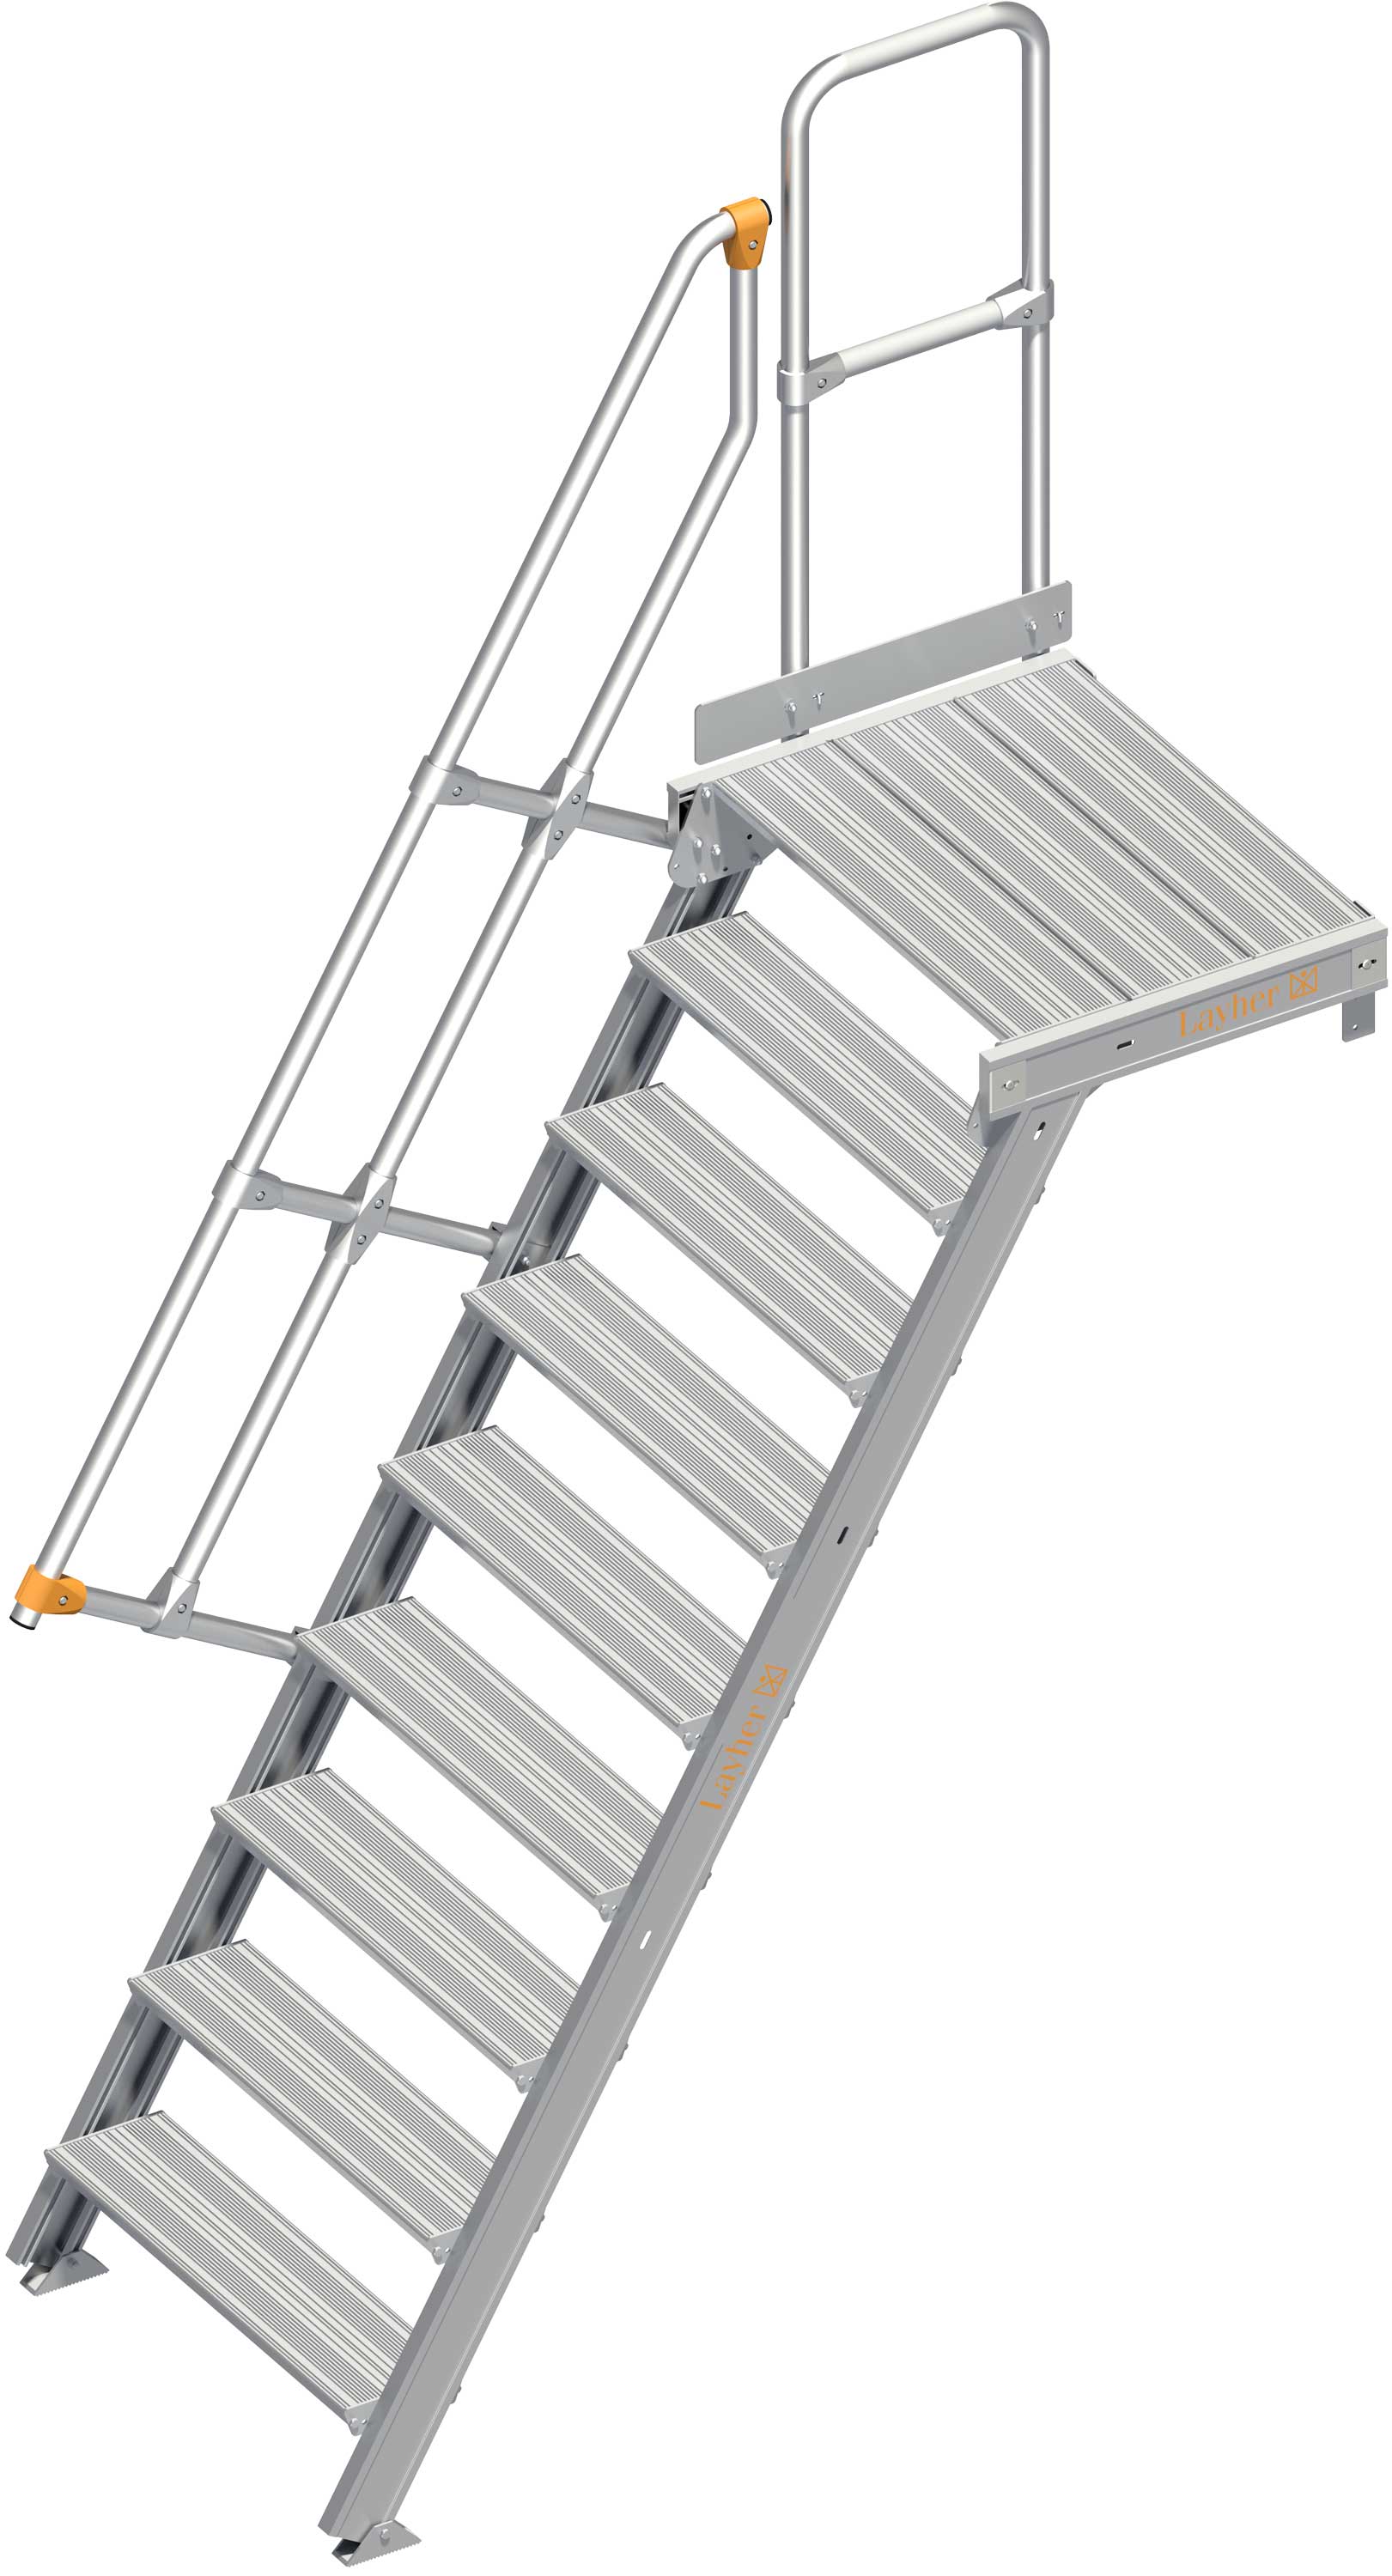 Layher Plattformtreppe 60° 9 Stufen - 800 mm breit